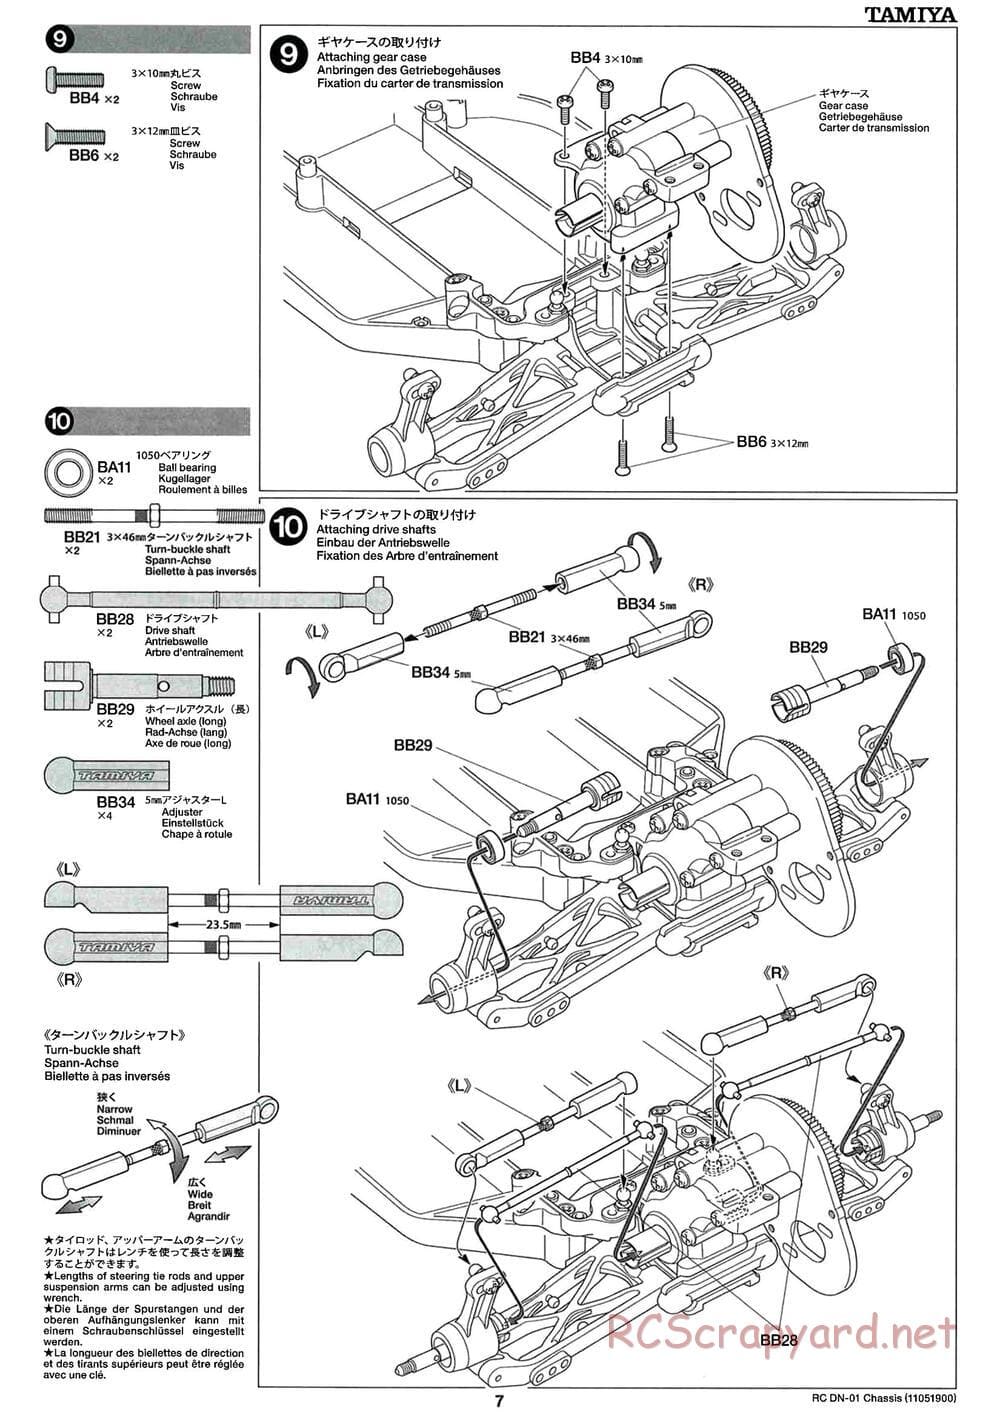 Tamiya - DN-01 Chassis - Manual - Page 7